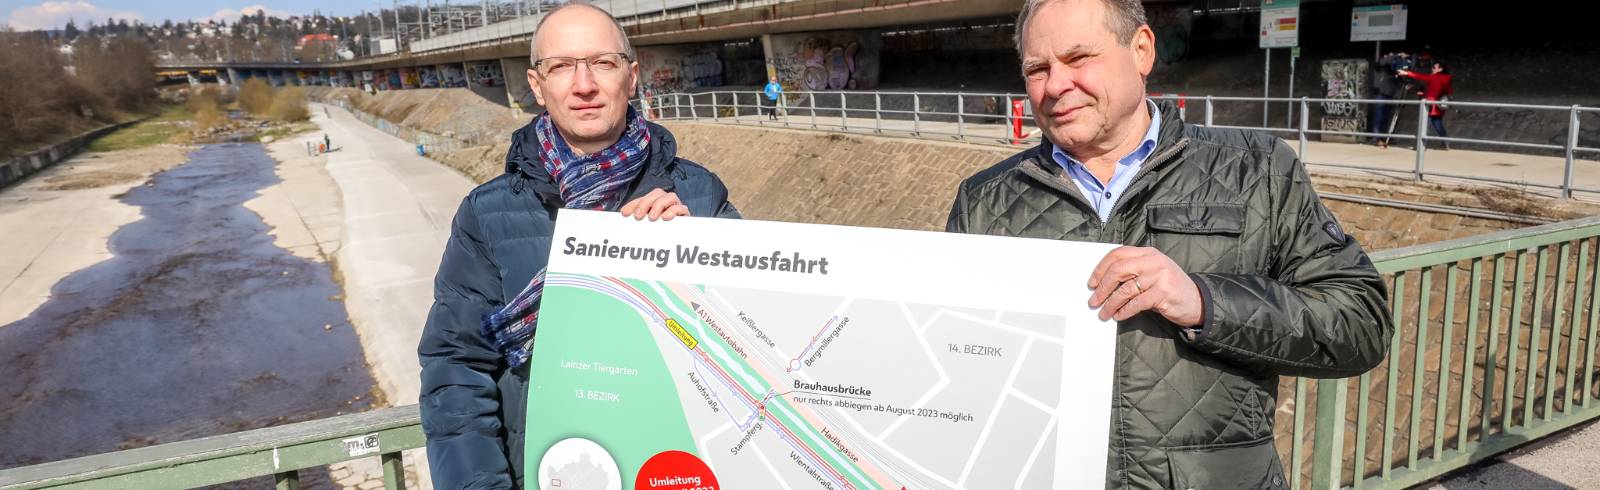 Wiener Westausfahrt wird modernisiert